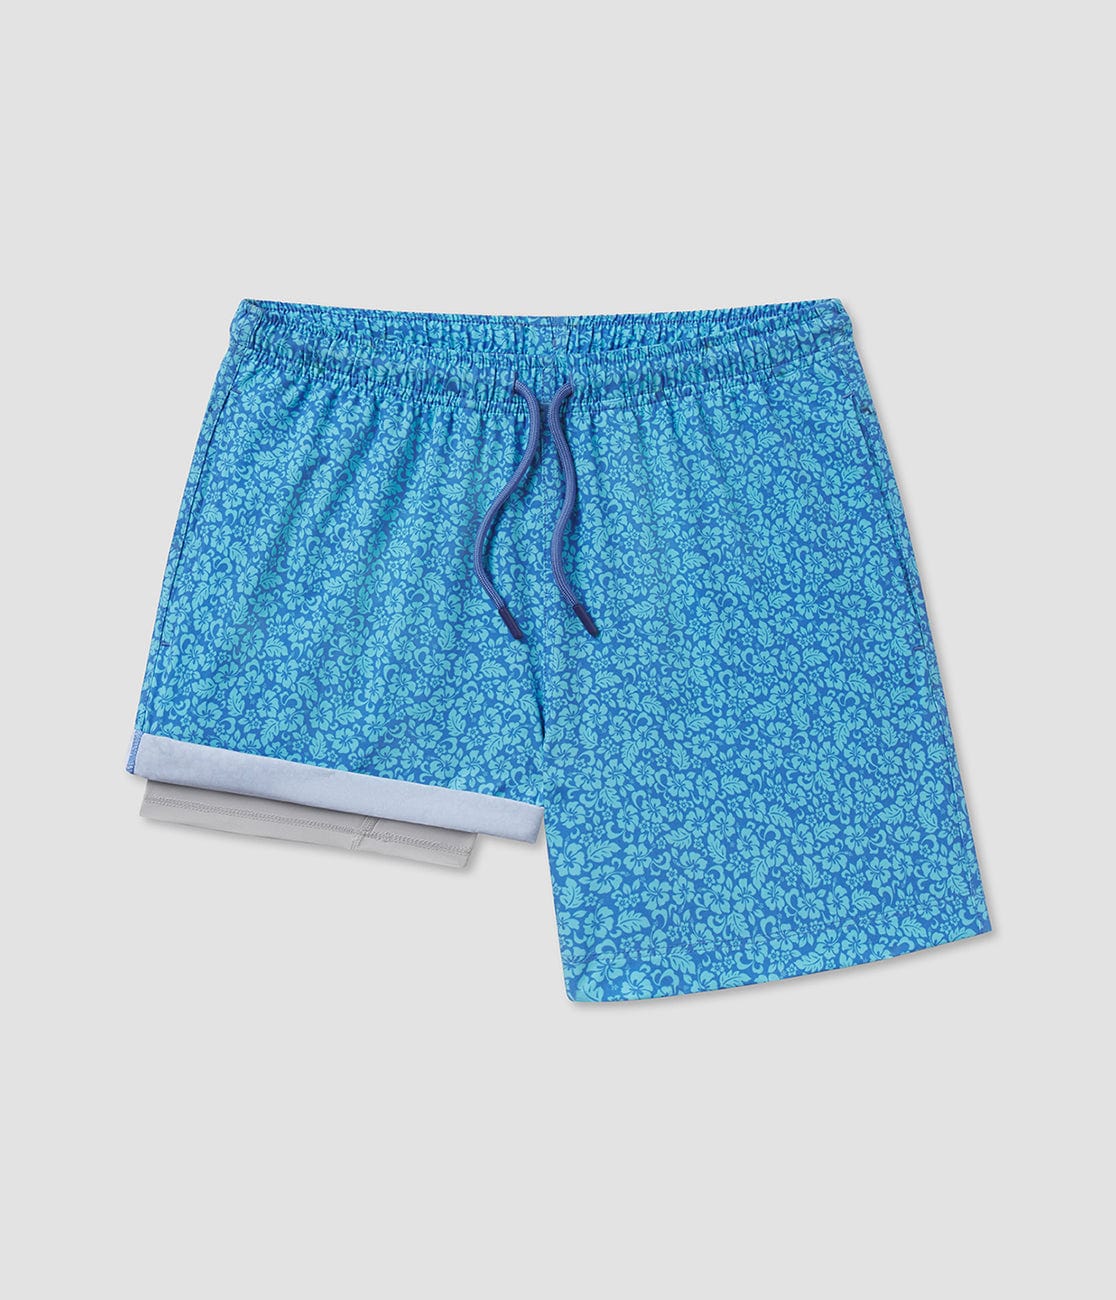 Blue Blooms Men's Swimsuit  - 5.5" inseam